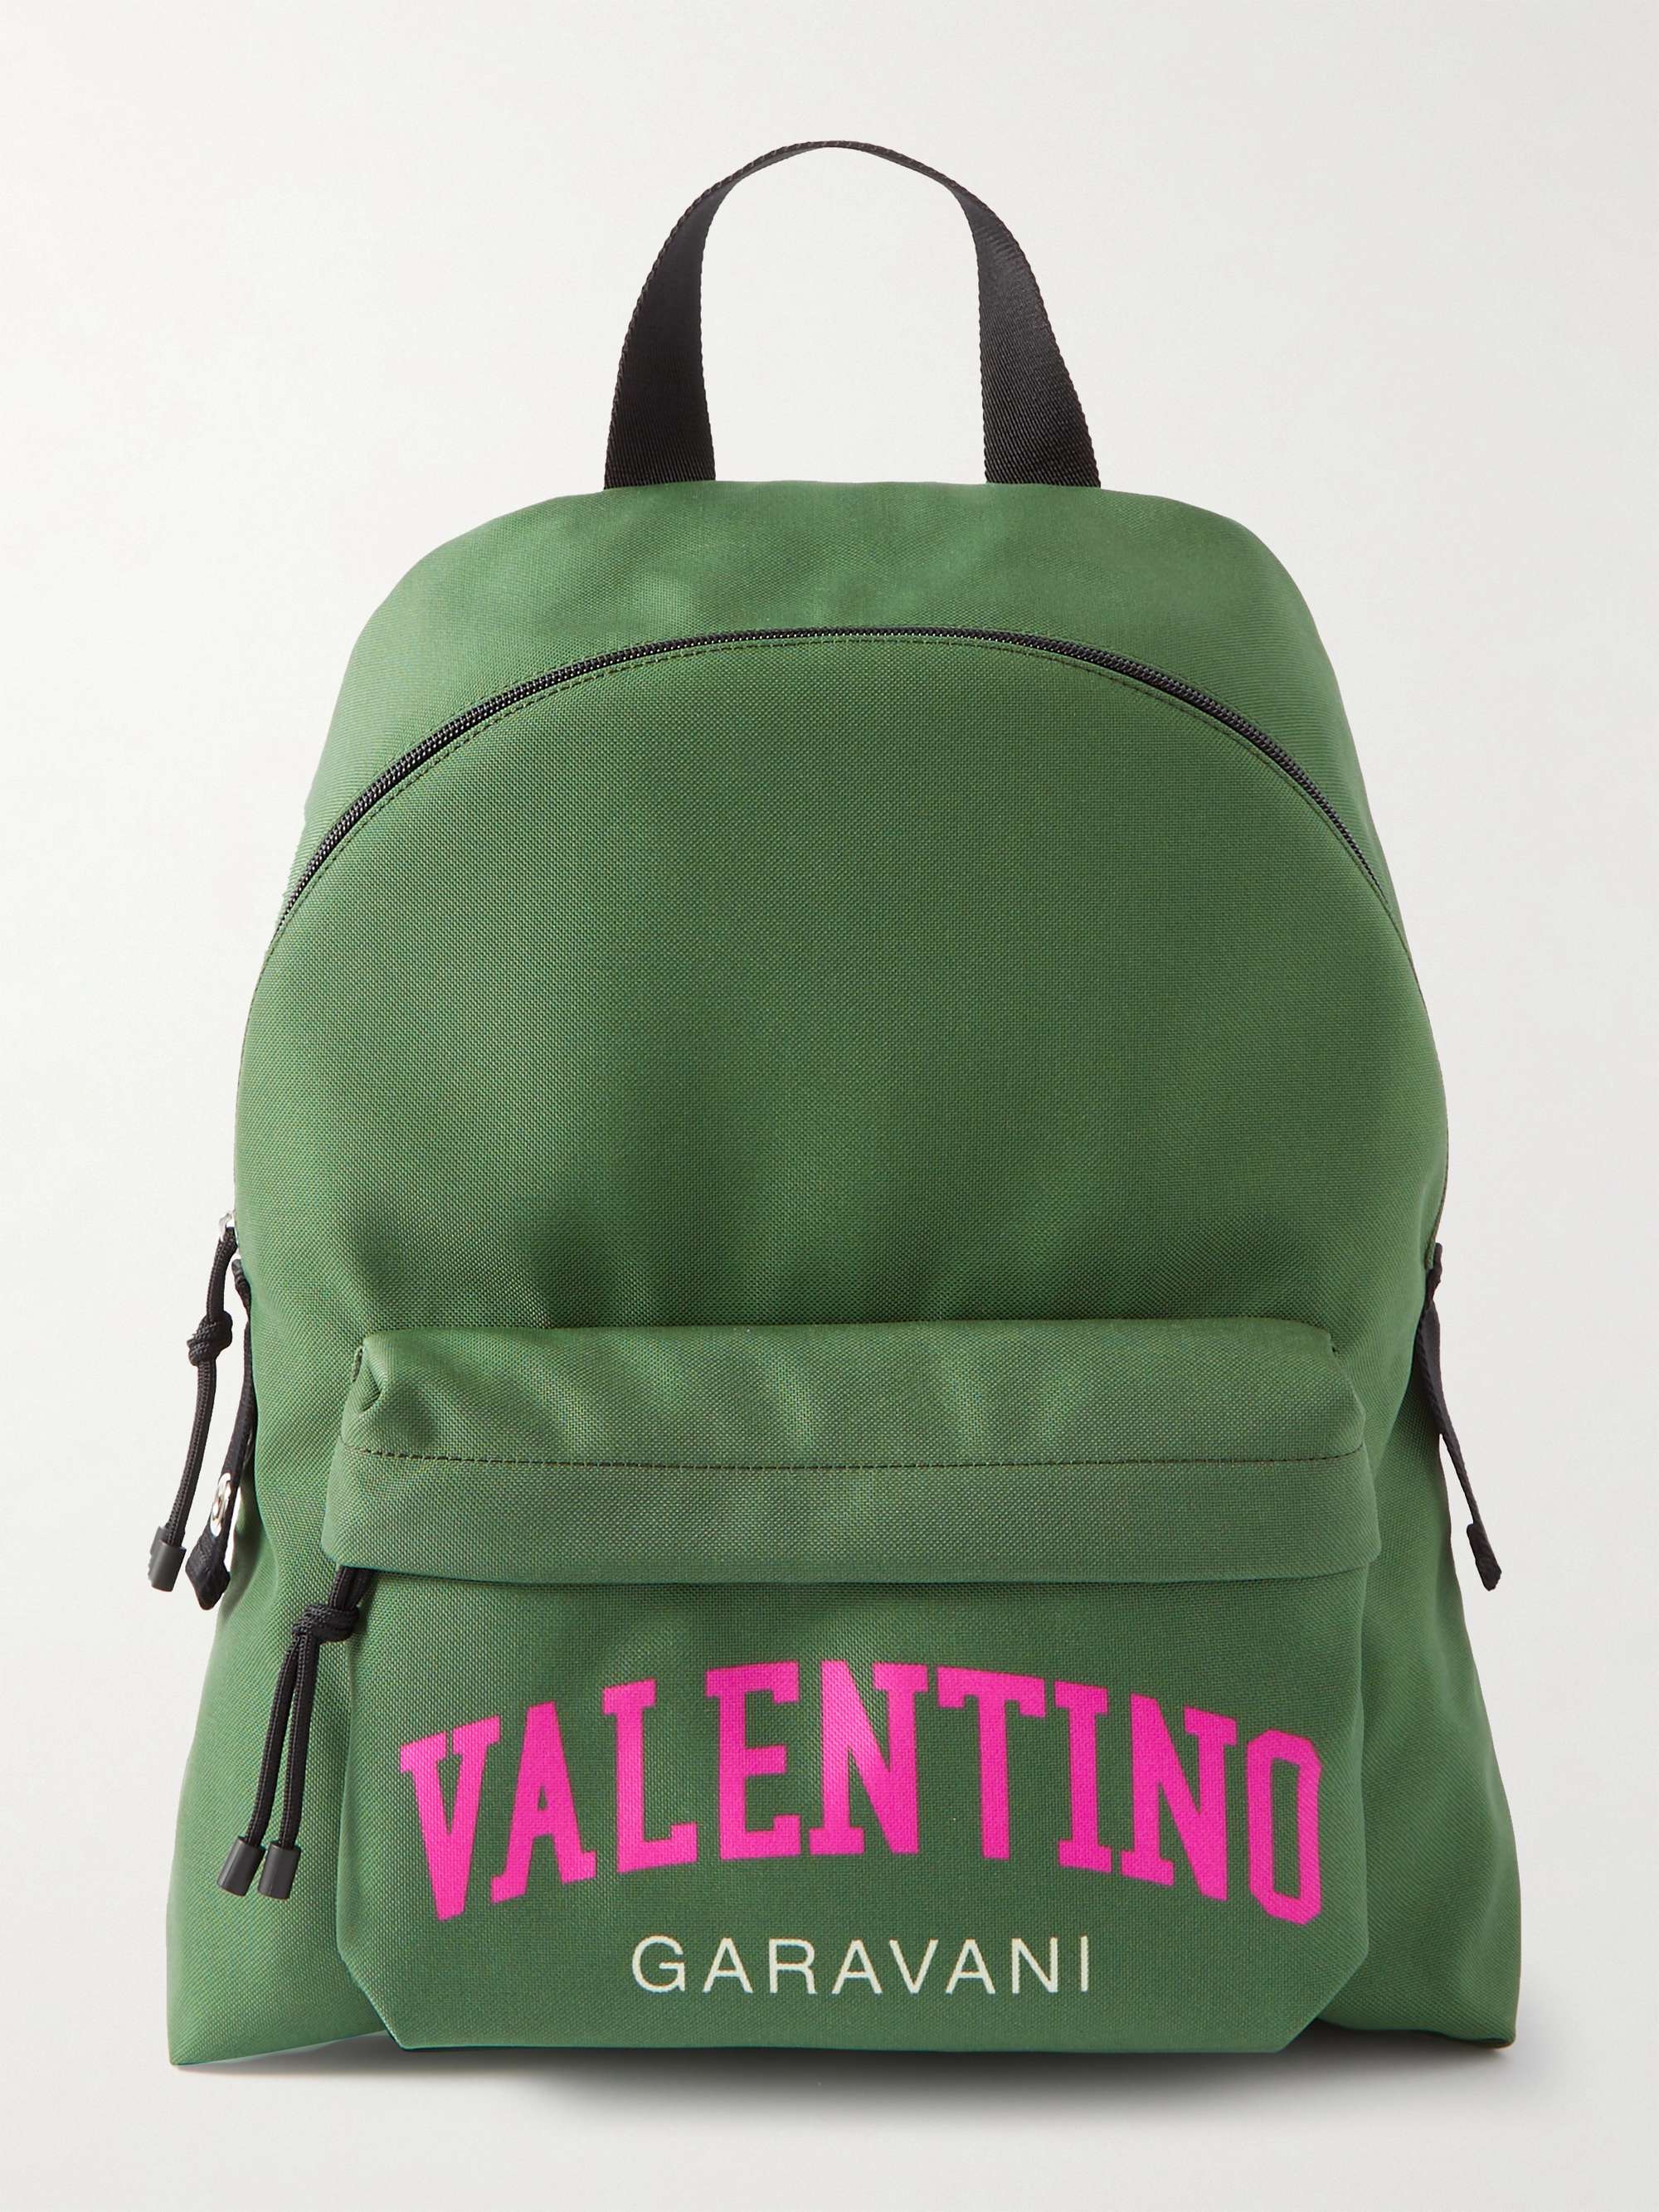 VALENTINO GARAVANI Valentino Garavani Logo-Print Canvas Backpack for Men |  MR PORTER